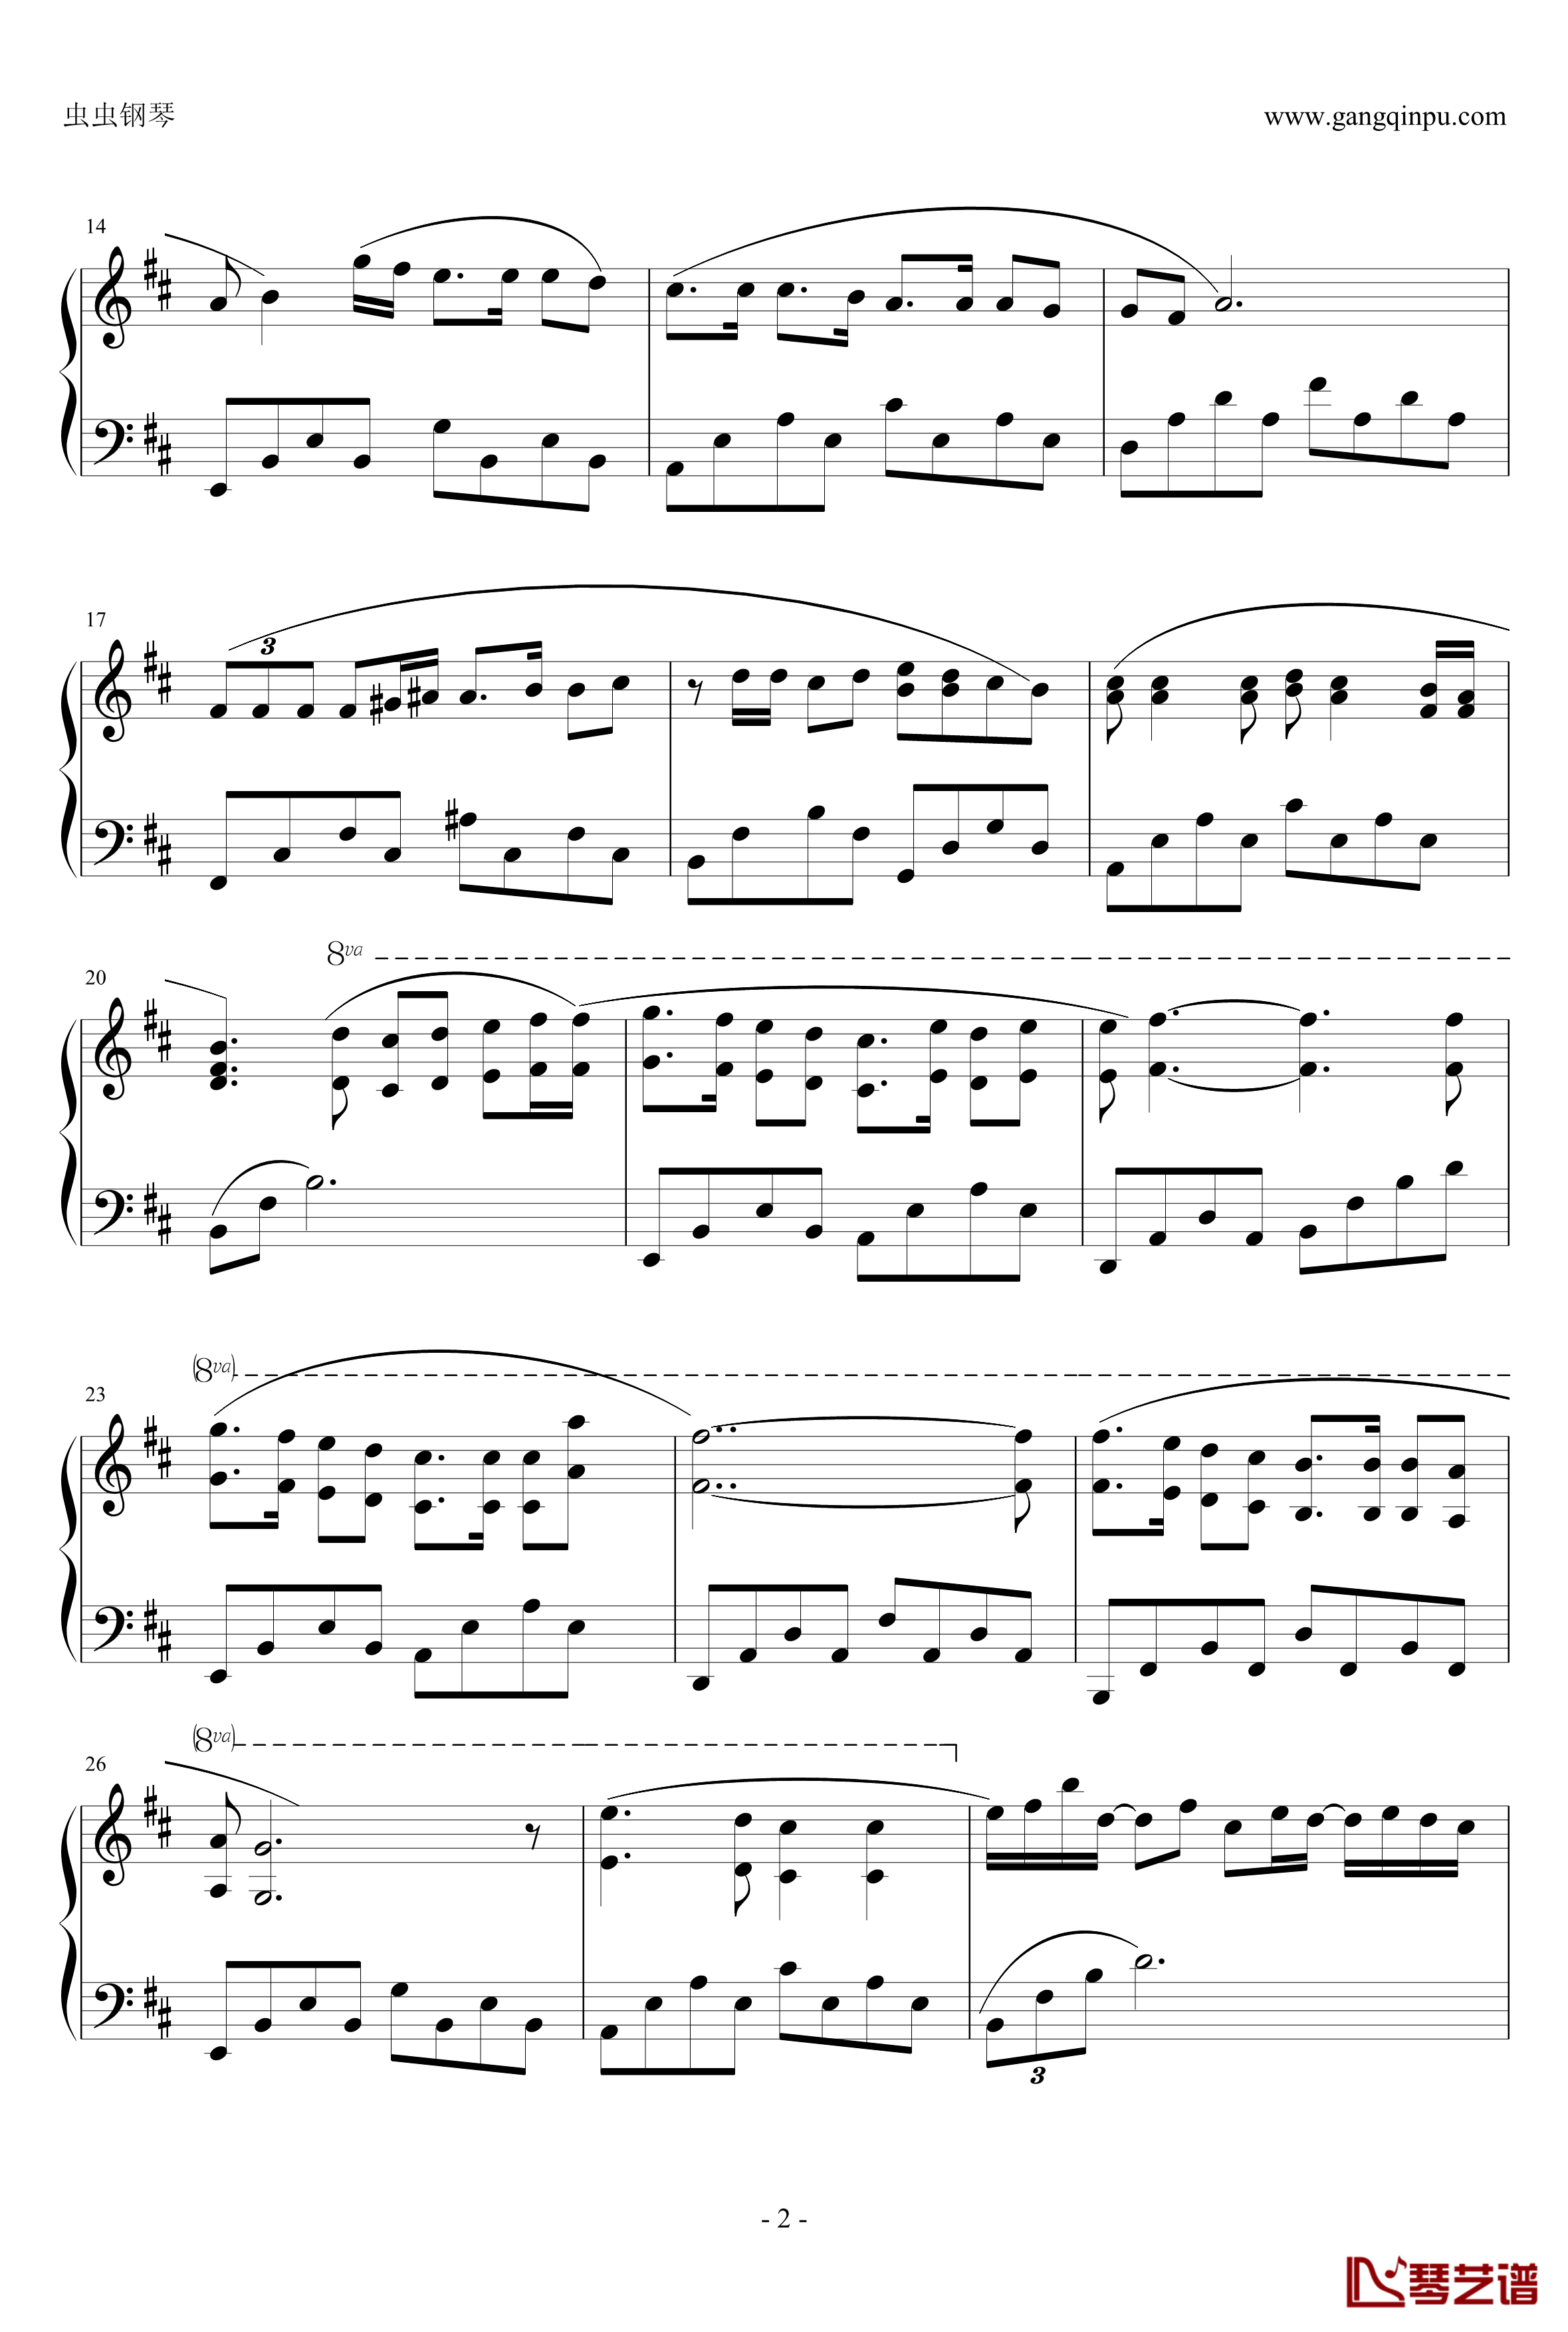 卡萨布兰卡钢琴谱-贝蒂希金斯2